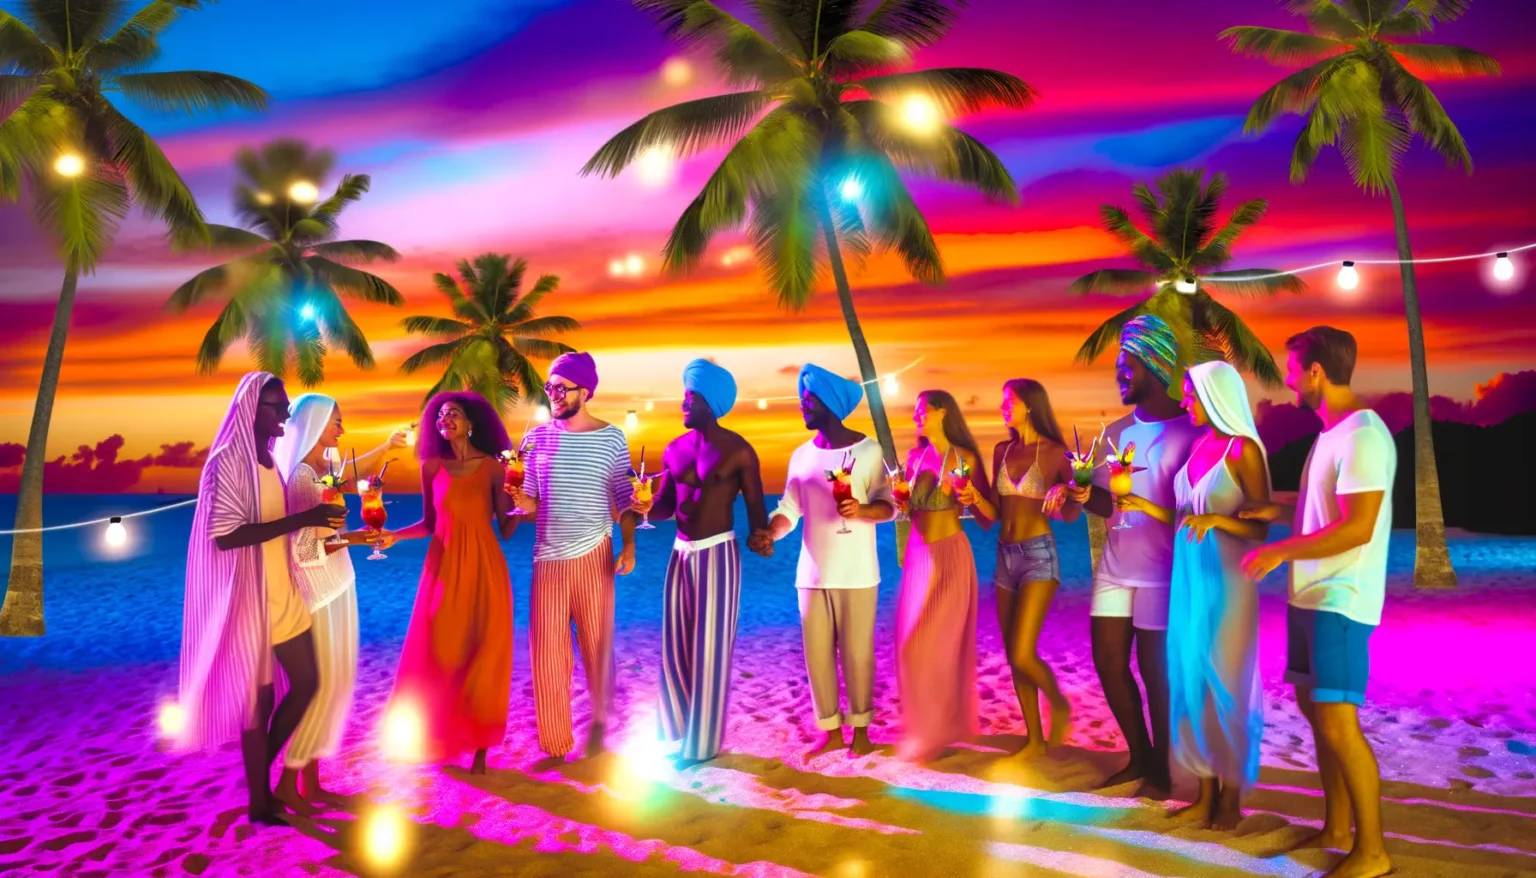 Eine Gruppe von Menschen genießt eine Strandparty während des Sonnenuntergangs. Sie tragen sommerliche Kleidung und halten Cocktails in den Händen. Im Hintergrund sieht man Palmen, Lichterketten und einen malerischen Himmel in leuchtenden Farben von Pink, Orange und Blau.